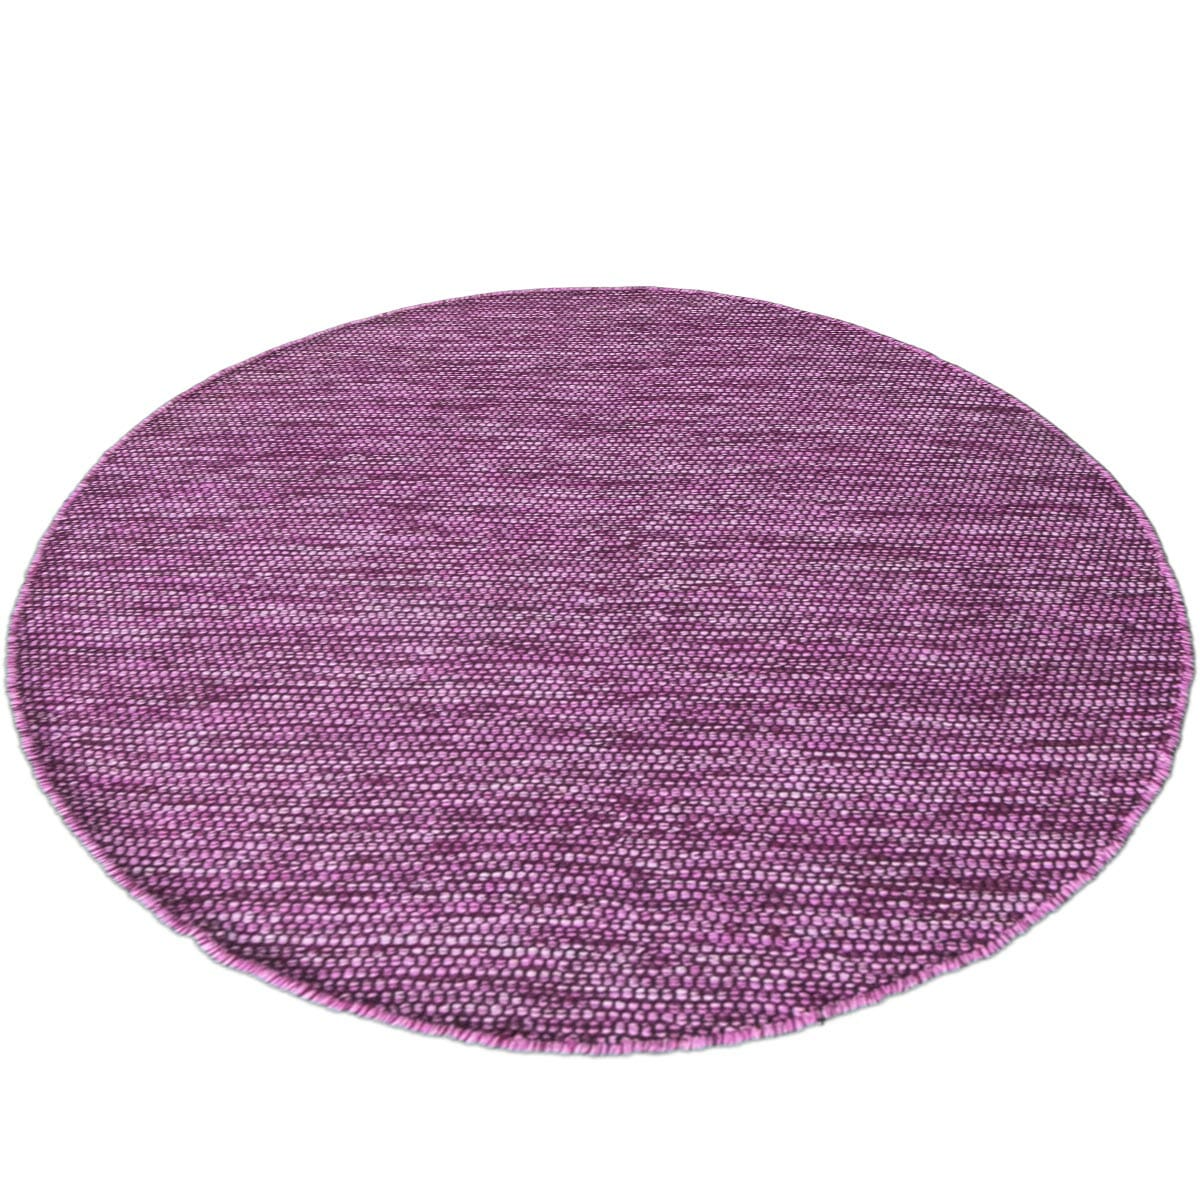 שטיח גפן כותנה 01 סגול/שחור עגול | השטיח האדום